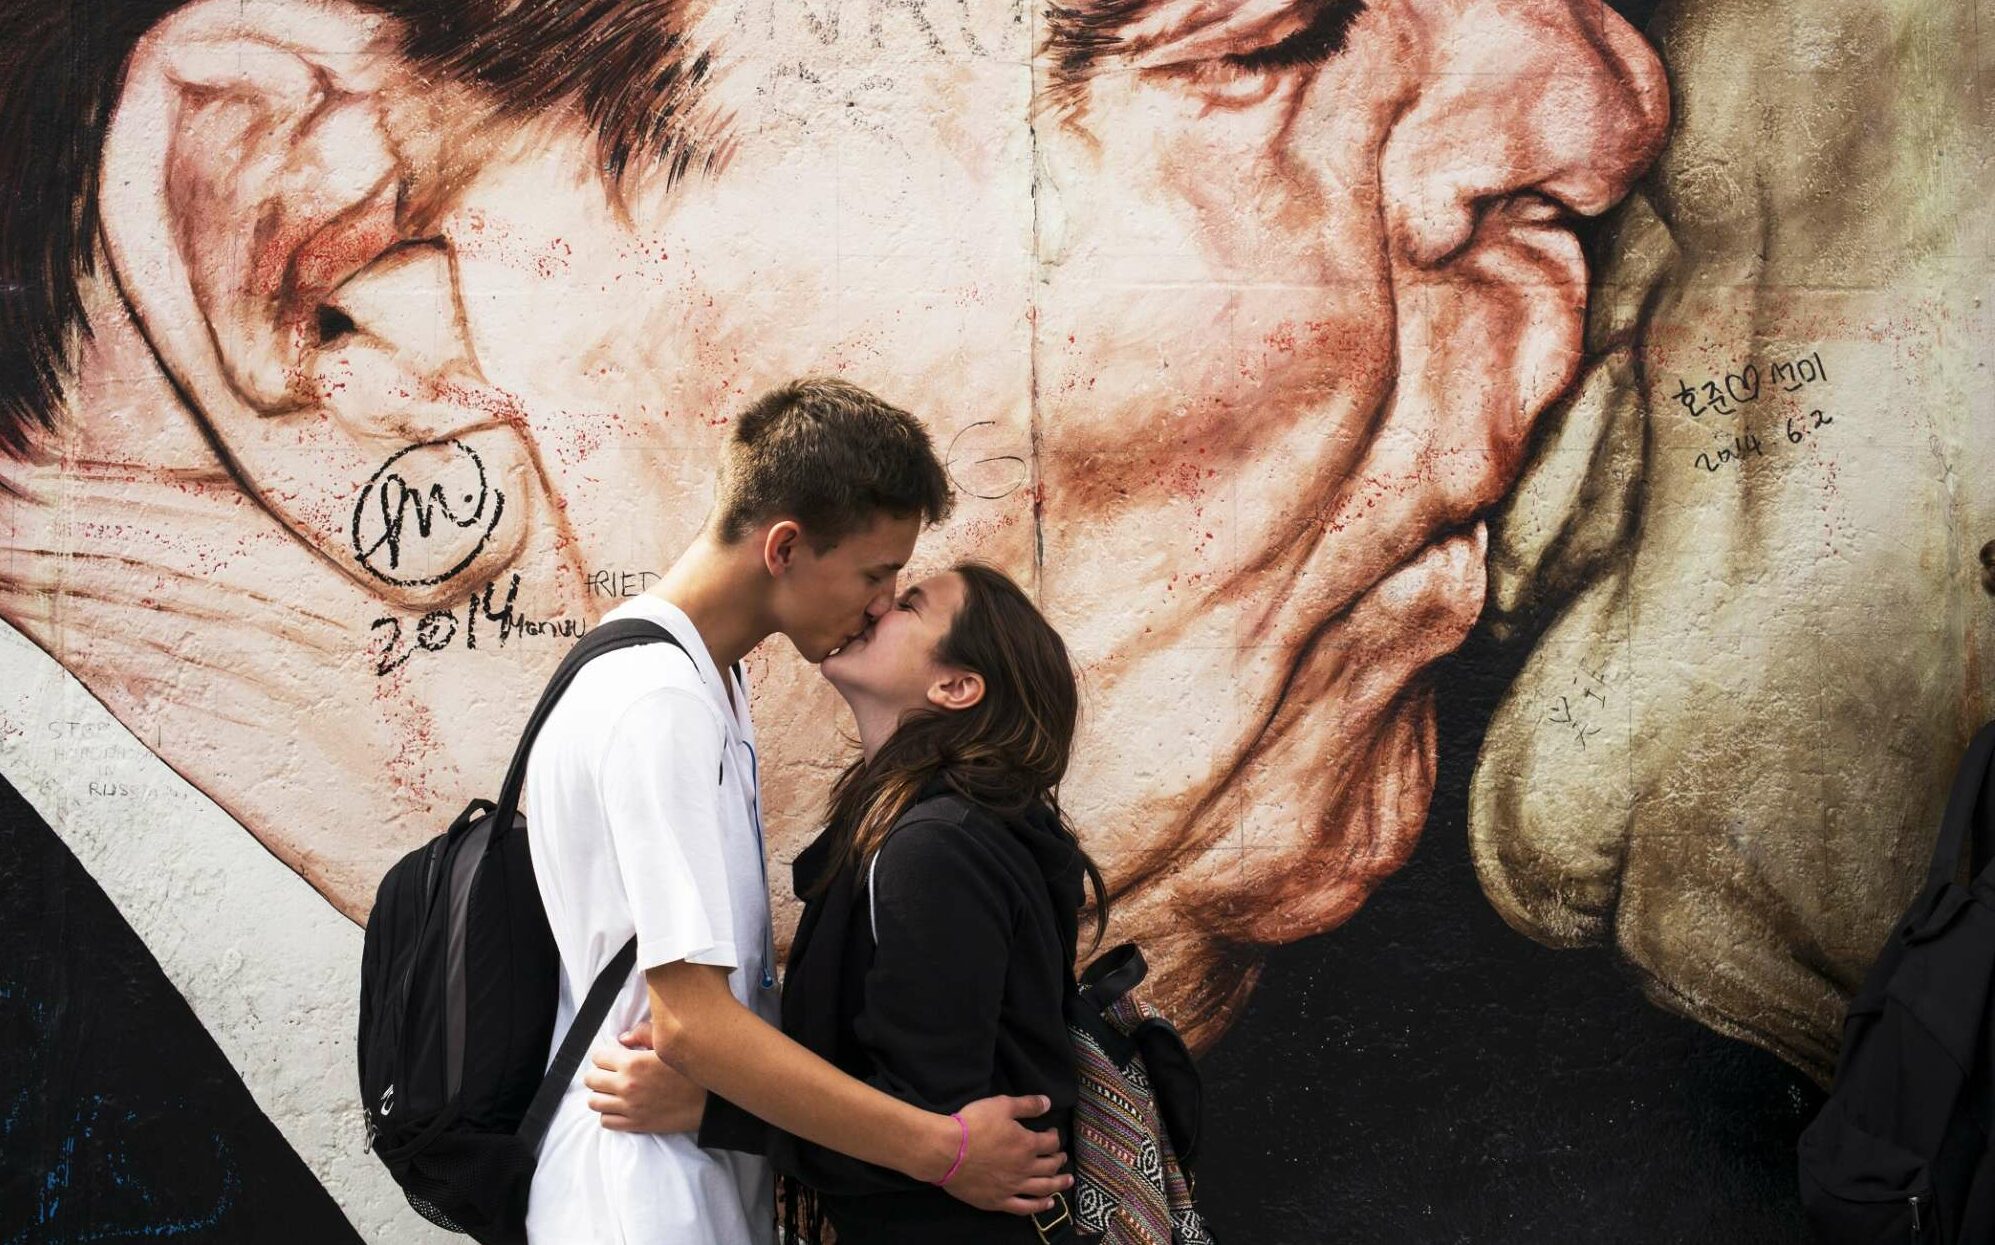 Ιούλιος 2014, Βερολίνο: Ενα ζευγάρι φιλιέται μπροστά από το πιο διάσημο έργο του ρώσου ζωγράφου Ντμίτρι Βρούμπελ, γνωστό ως «Θεέ μου, βοήθησέ με να επιβιώσω από αυτή τη θανατηφόρα αγάπη» σε ένα τμήμα του πρώην Τείχους του Βερολίνου στην East Side Gallery